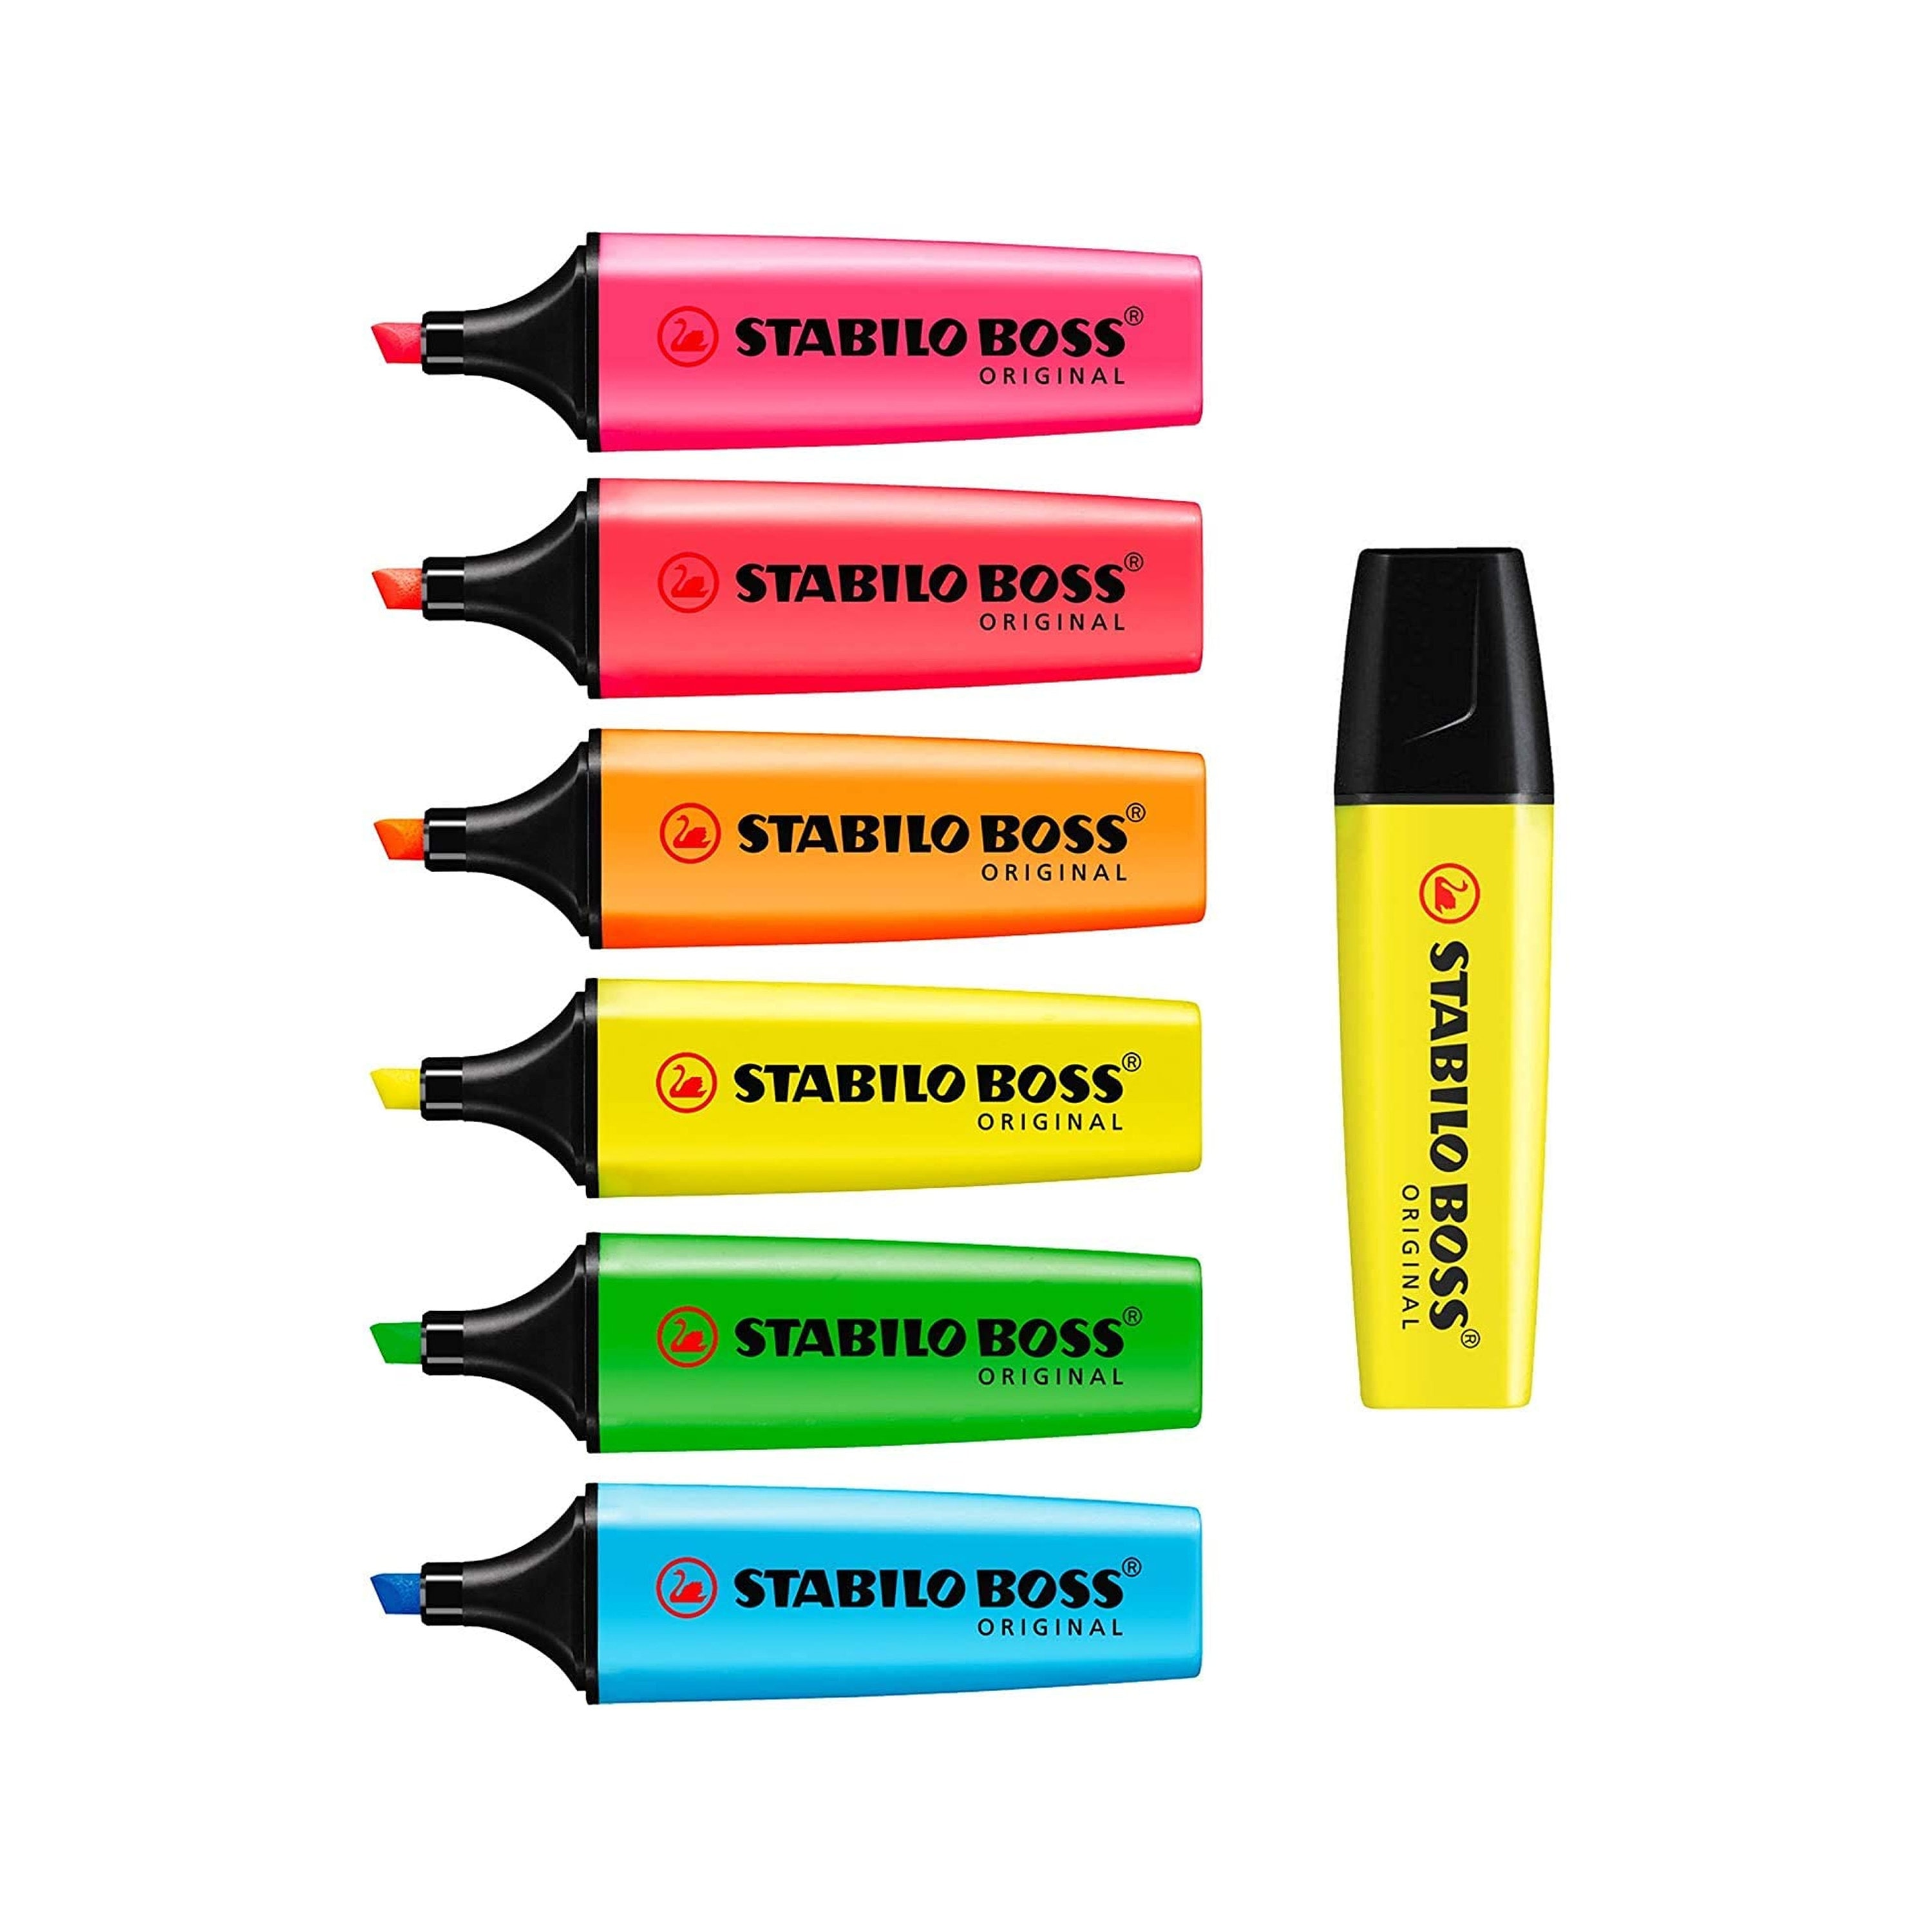 Highlighter STABILO BOSS ORIGINAL Highlighter Marker Pens Full Set